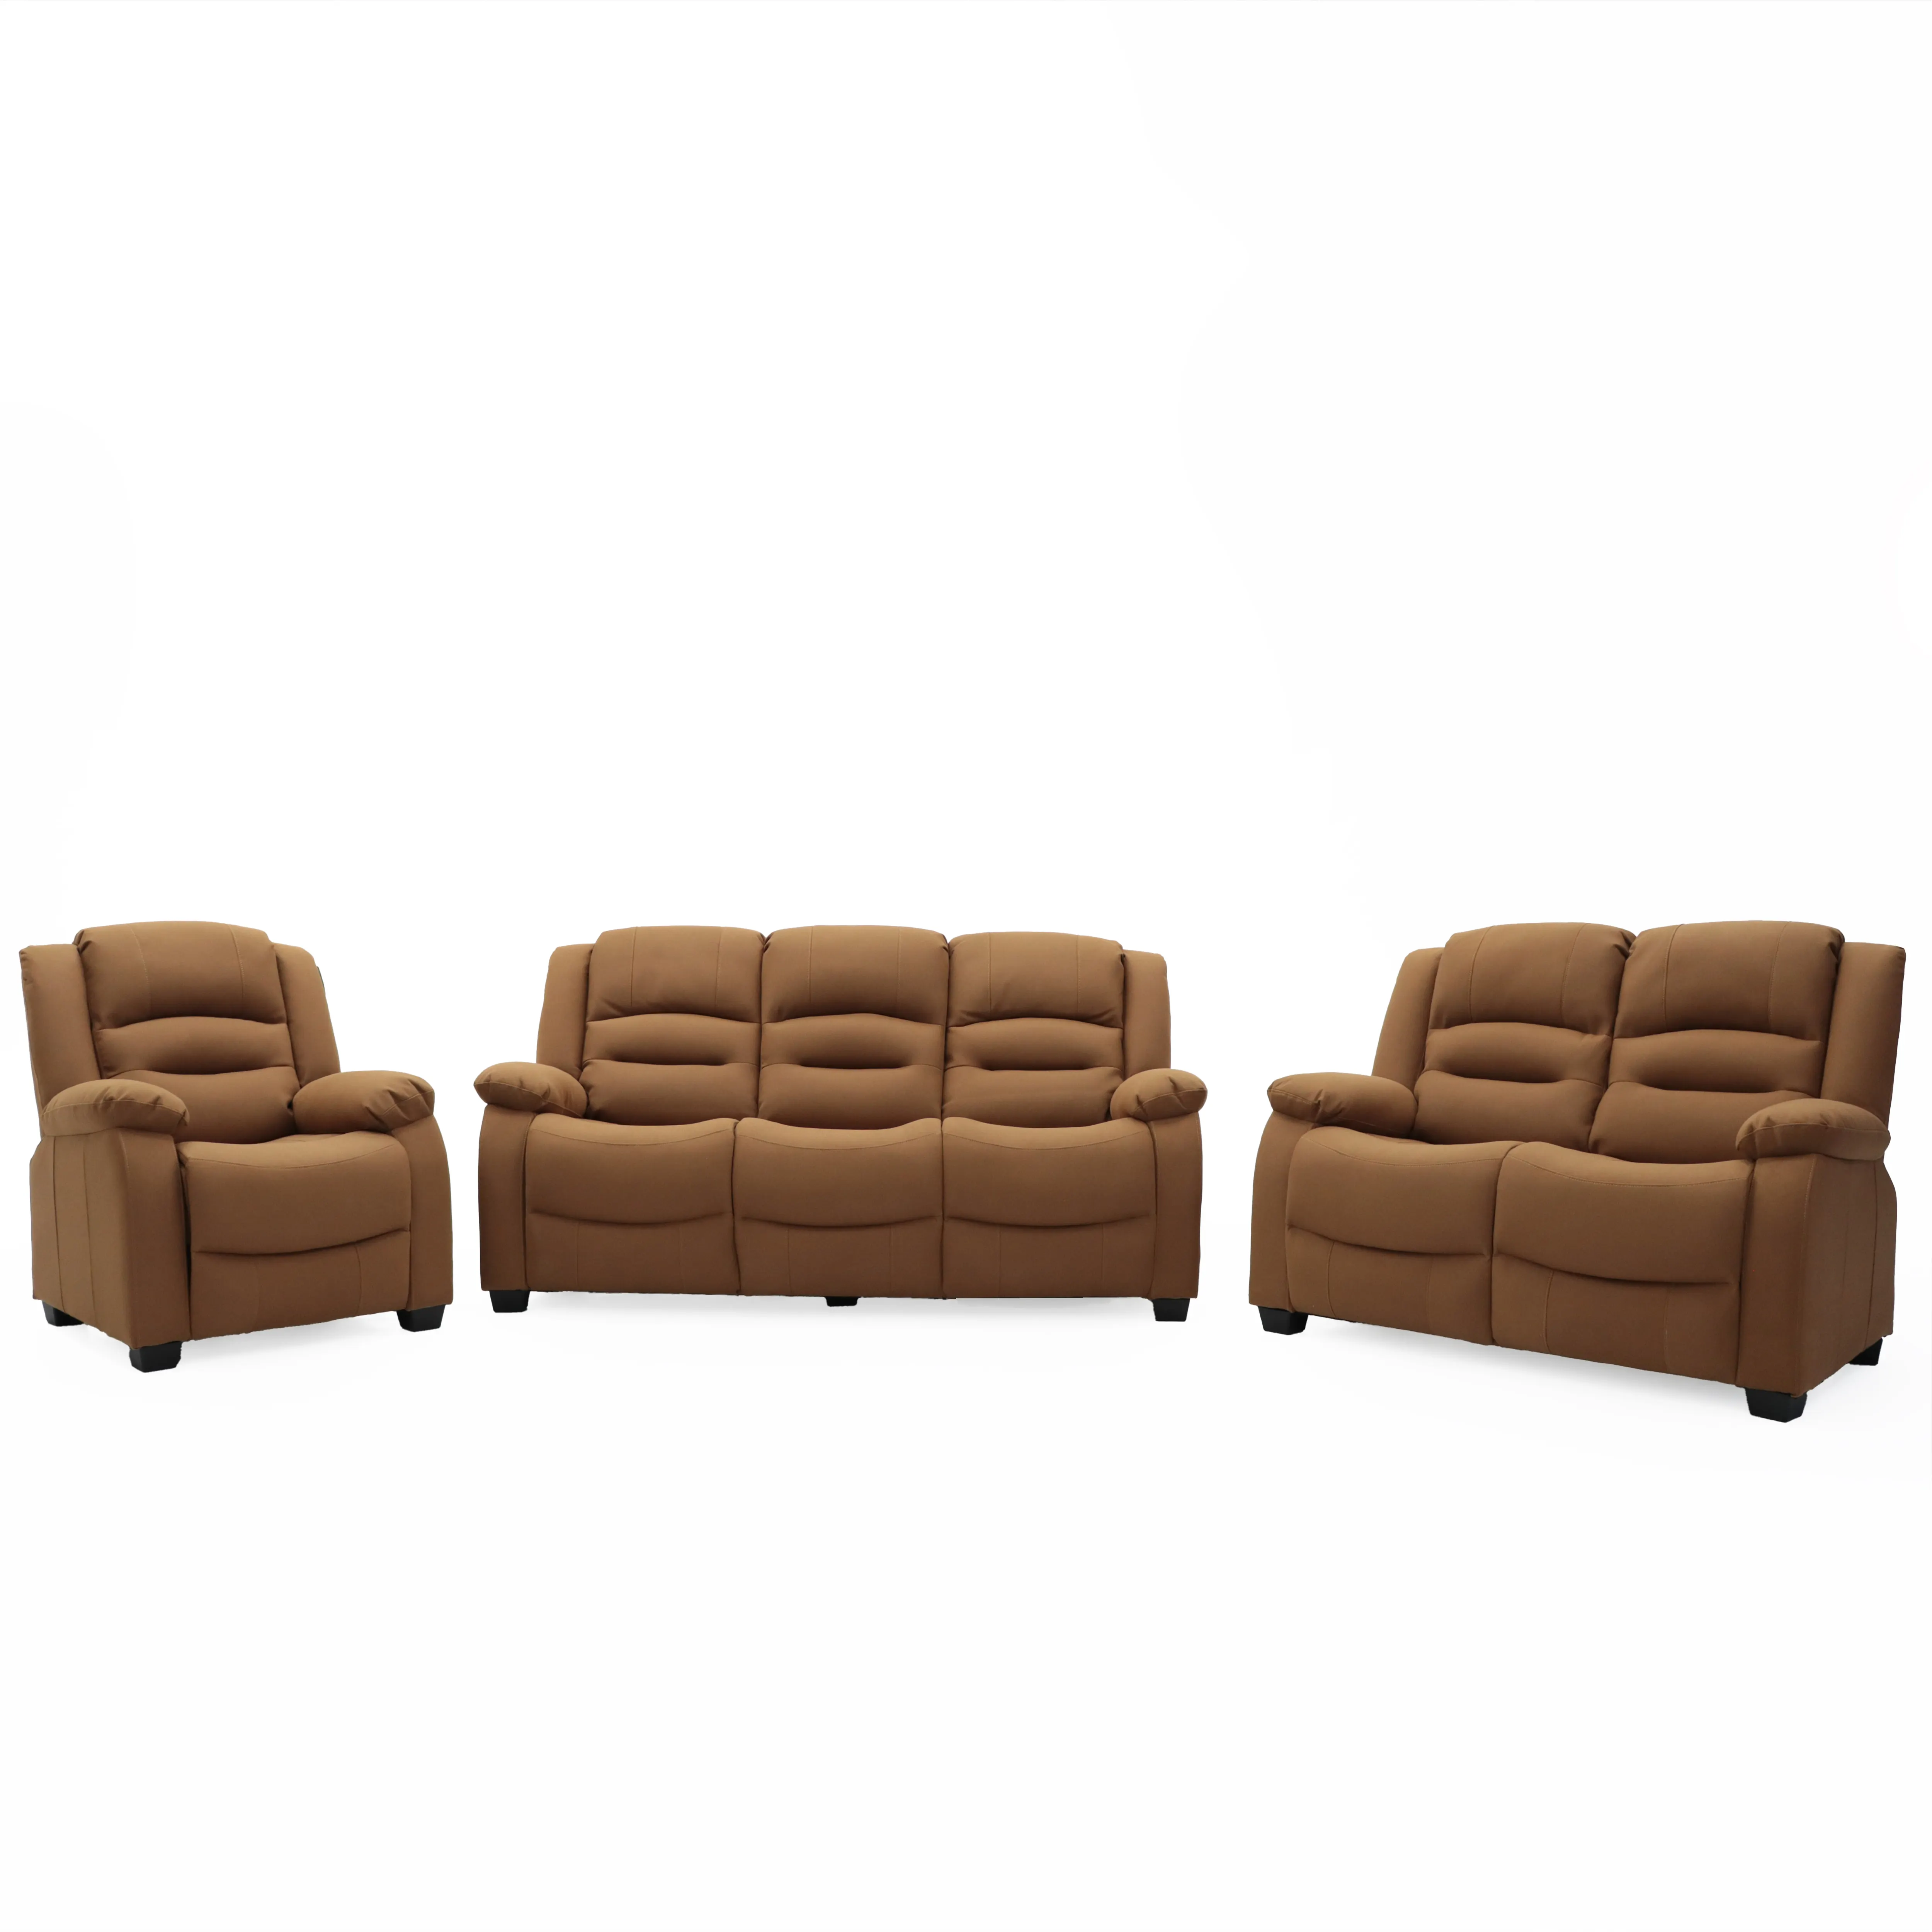 Geekfurniture mobilya lüks sabit koltuk takımı kumaş Modern 3 + 2 kişilik oturma odası katlanır aşağı masa ile sabit kanepe